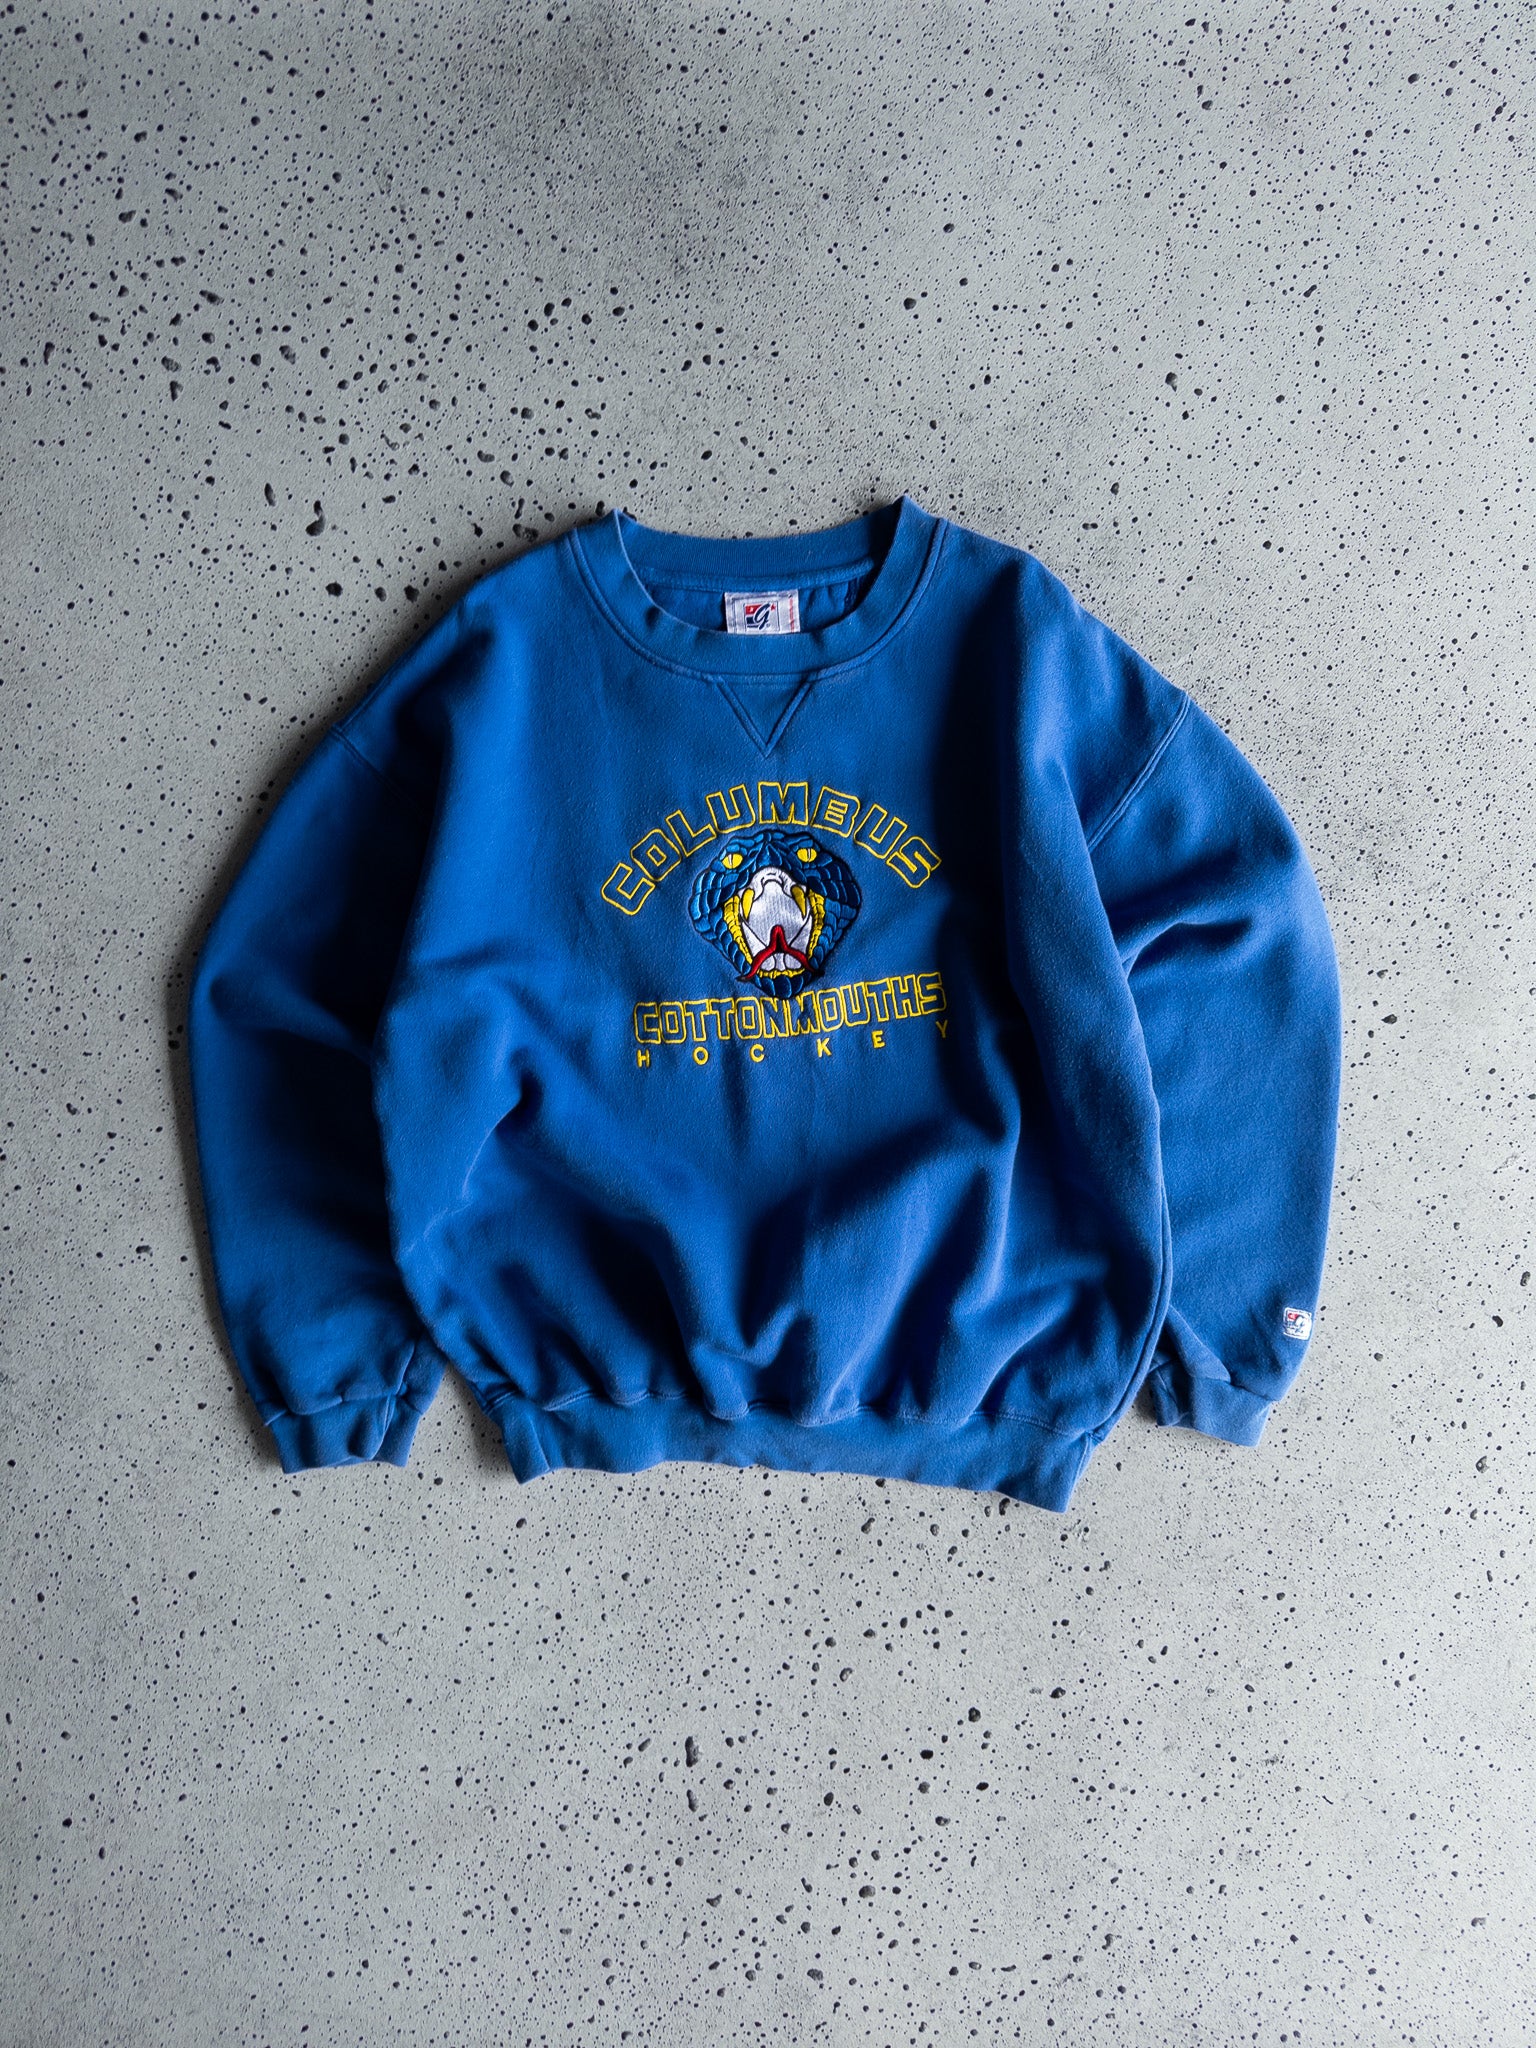 Vintage Columbus Cottonmouths Sweatshirt (L)